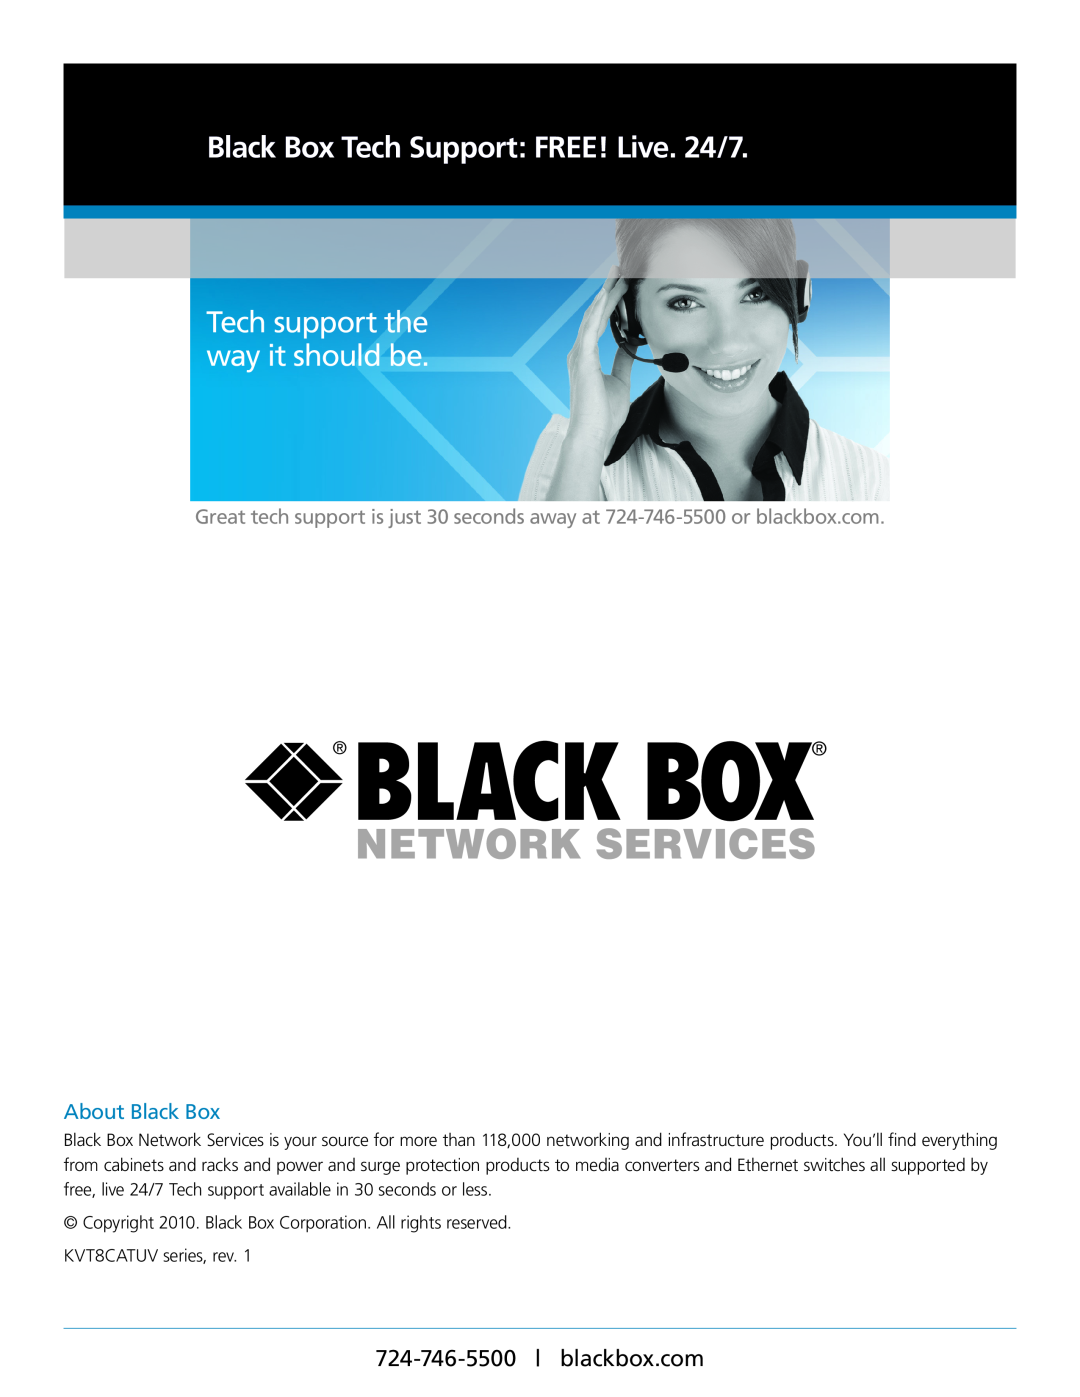 Black Box KVT8CATUV, KVT4IP16CATUV, KVT16CATUV About Black Box, Network Services, Black Box Tech Support FREE! Live. 24/7 